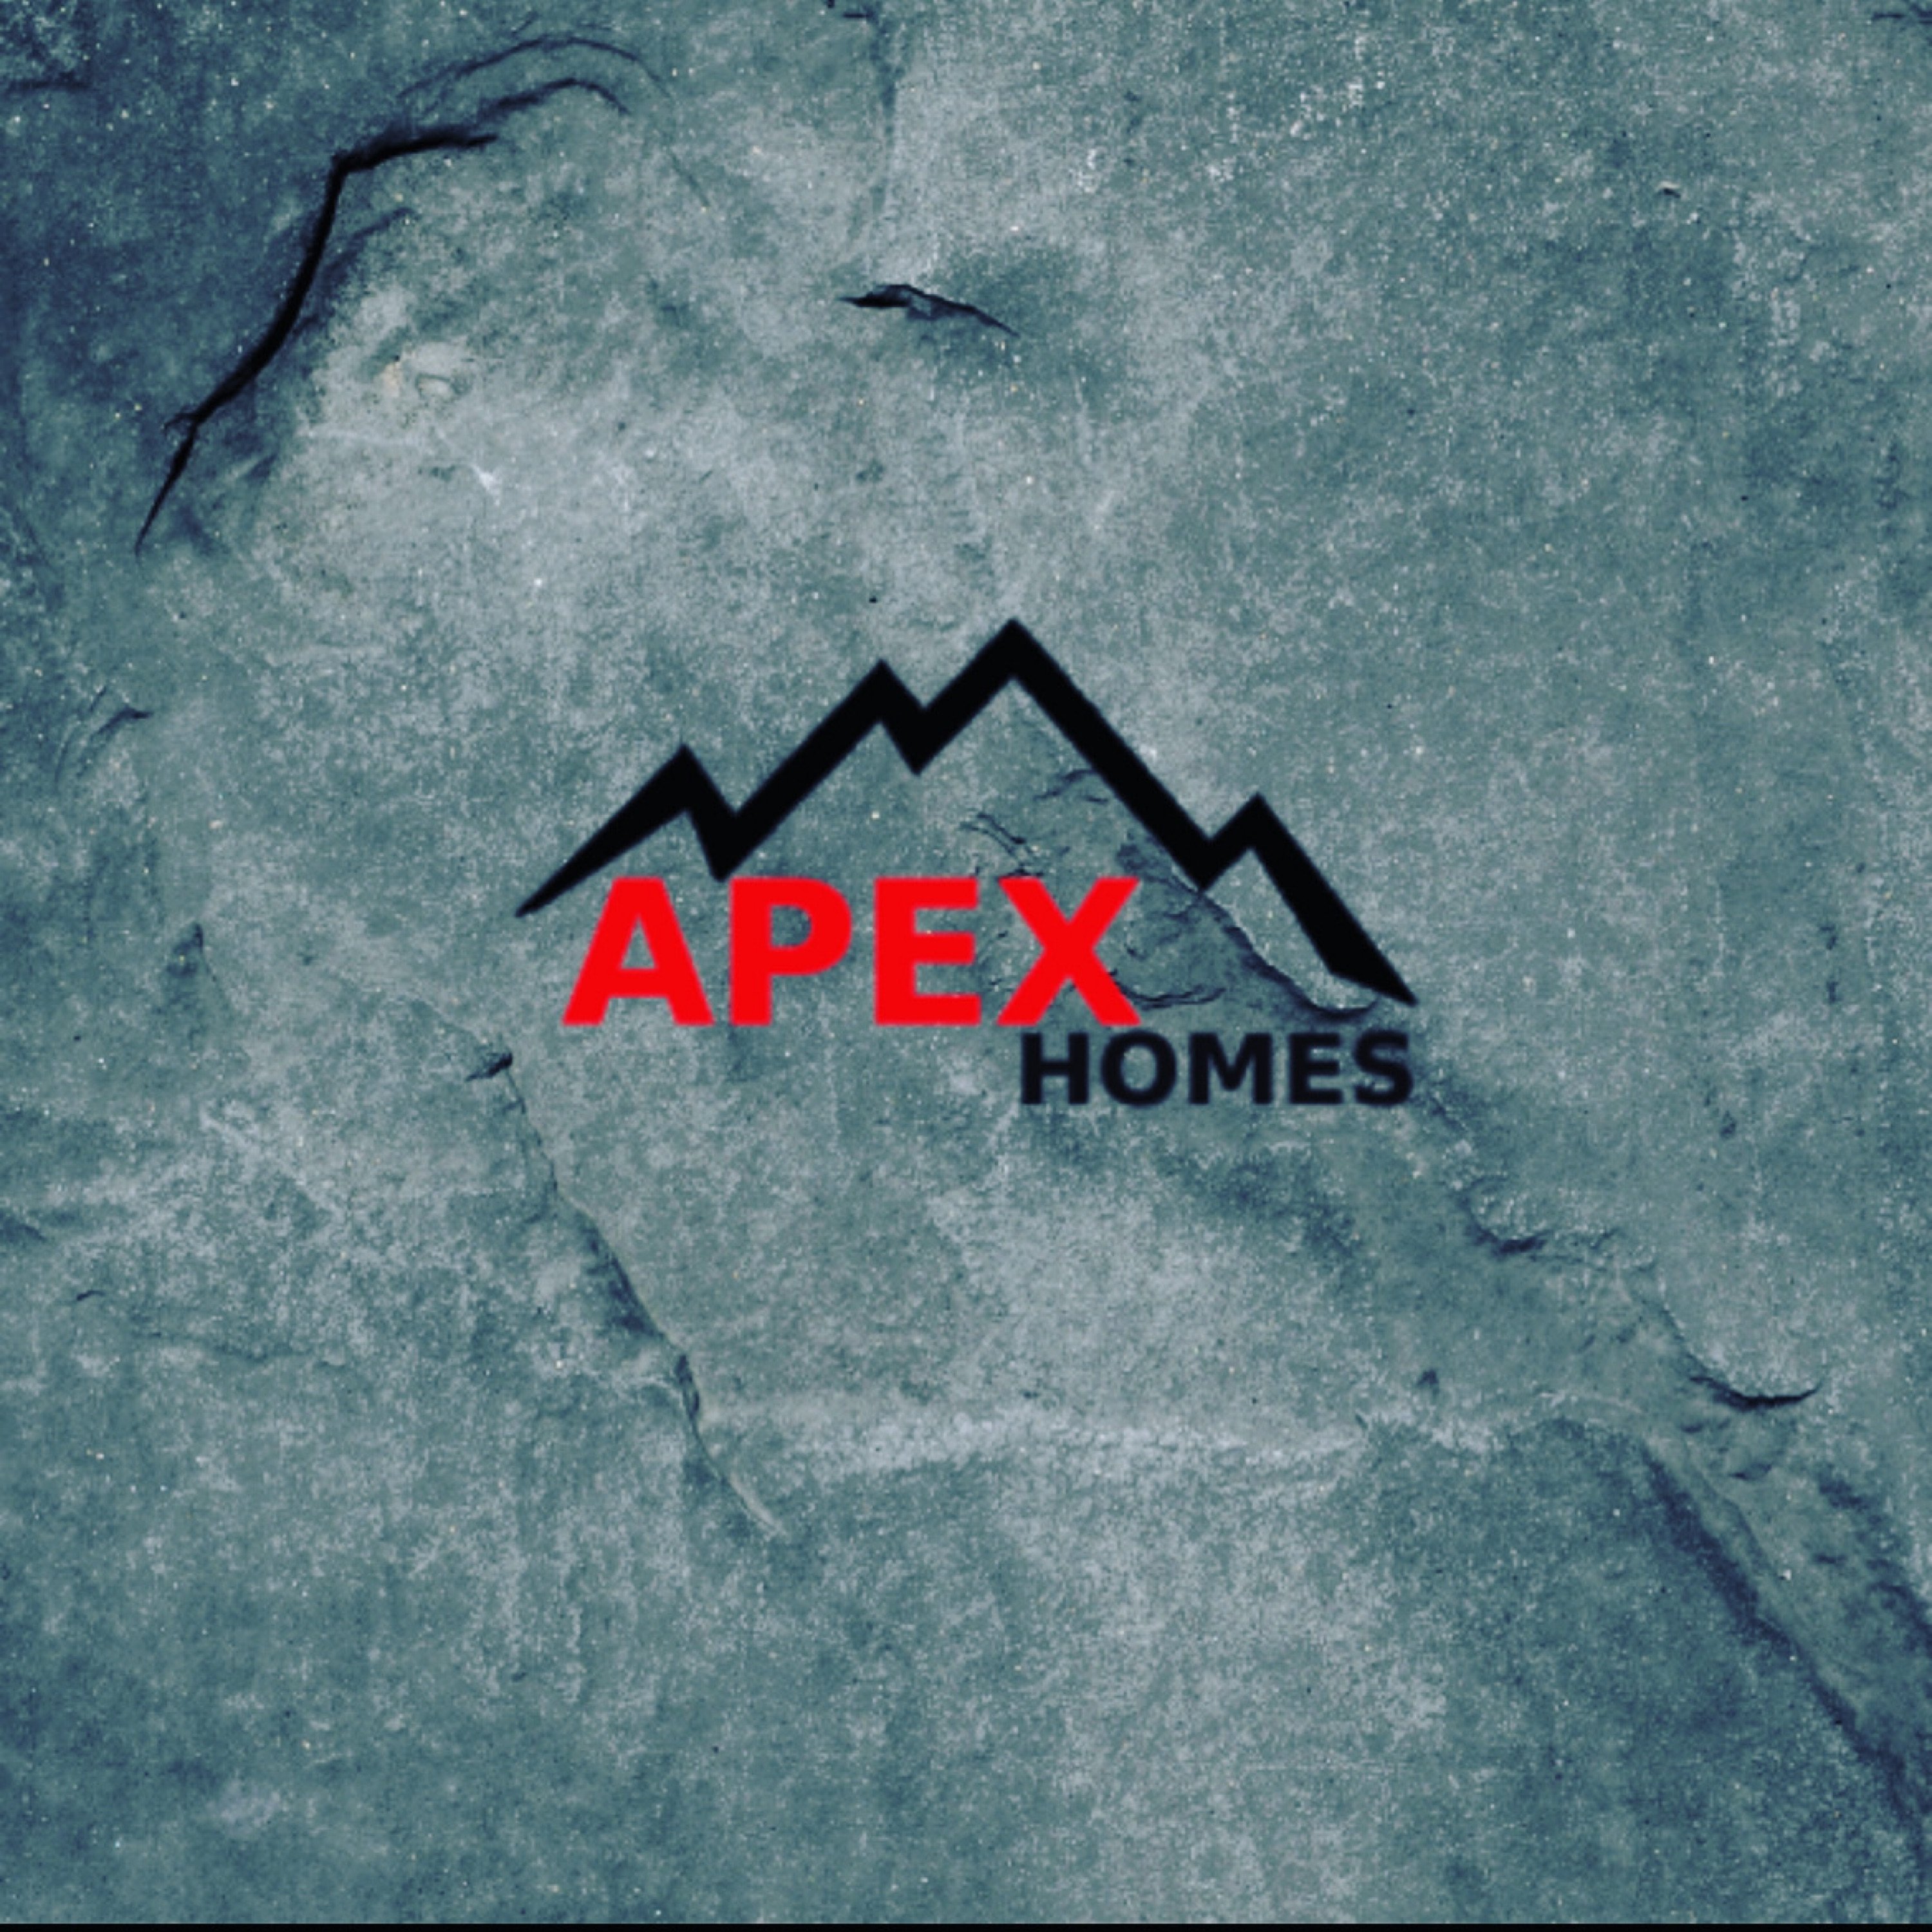 Apex Homes Logo